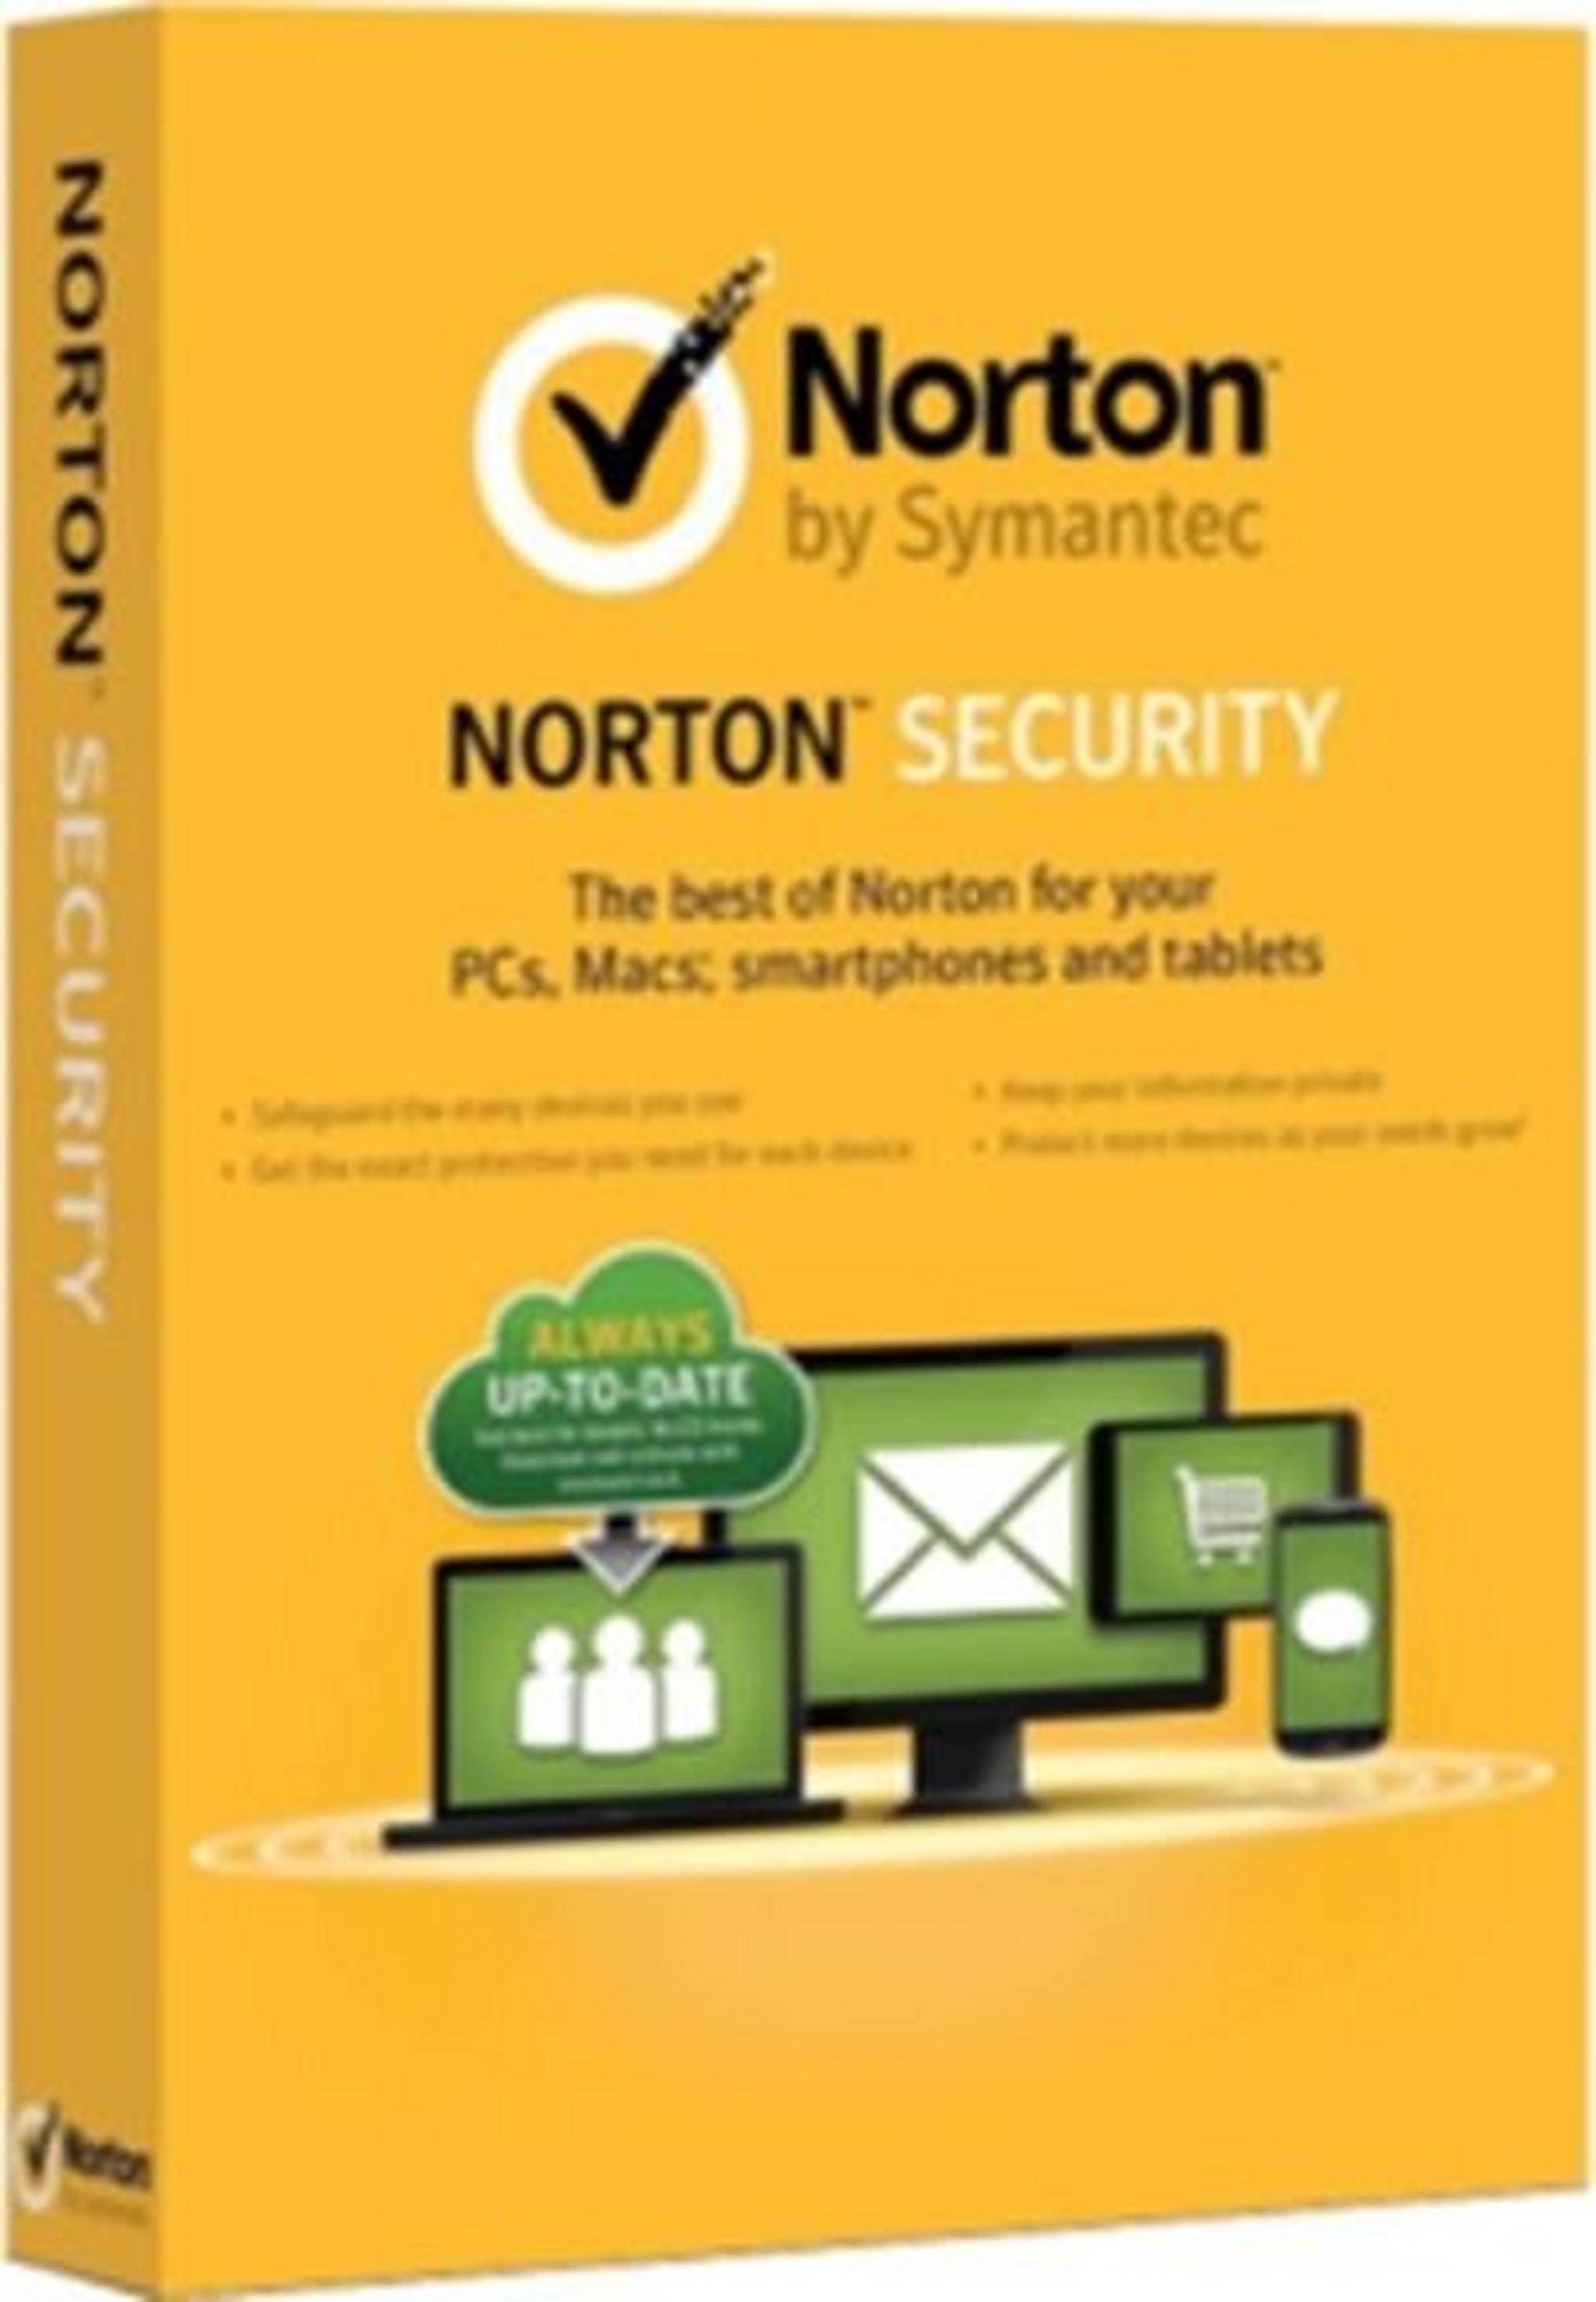 برنامج الحماية نورتون سيكيوريتي عربي ٣,٠ - لمستخدم واحد وجهاز واحد لمدة ٣ أعوام من سيمانتك (21370373)